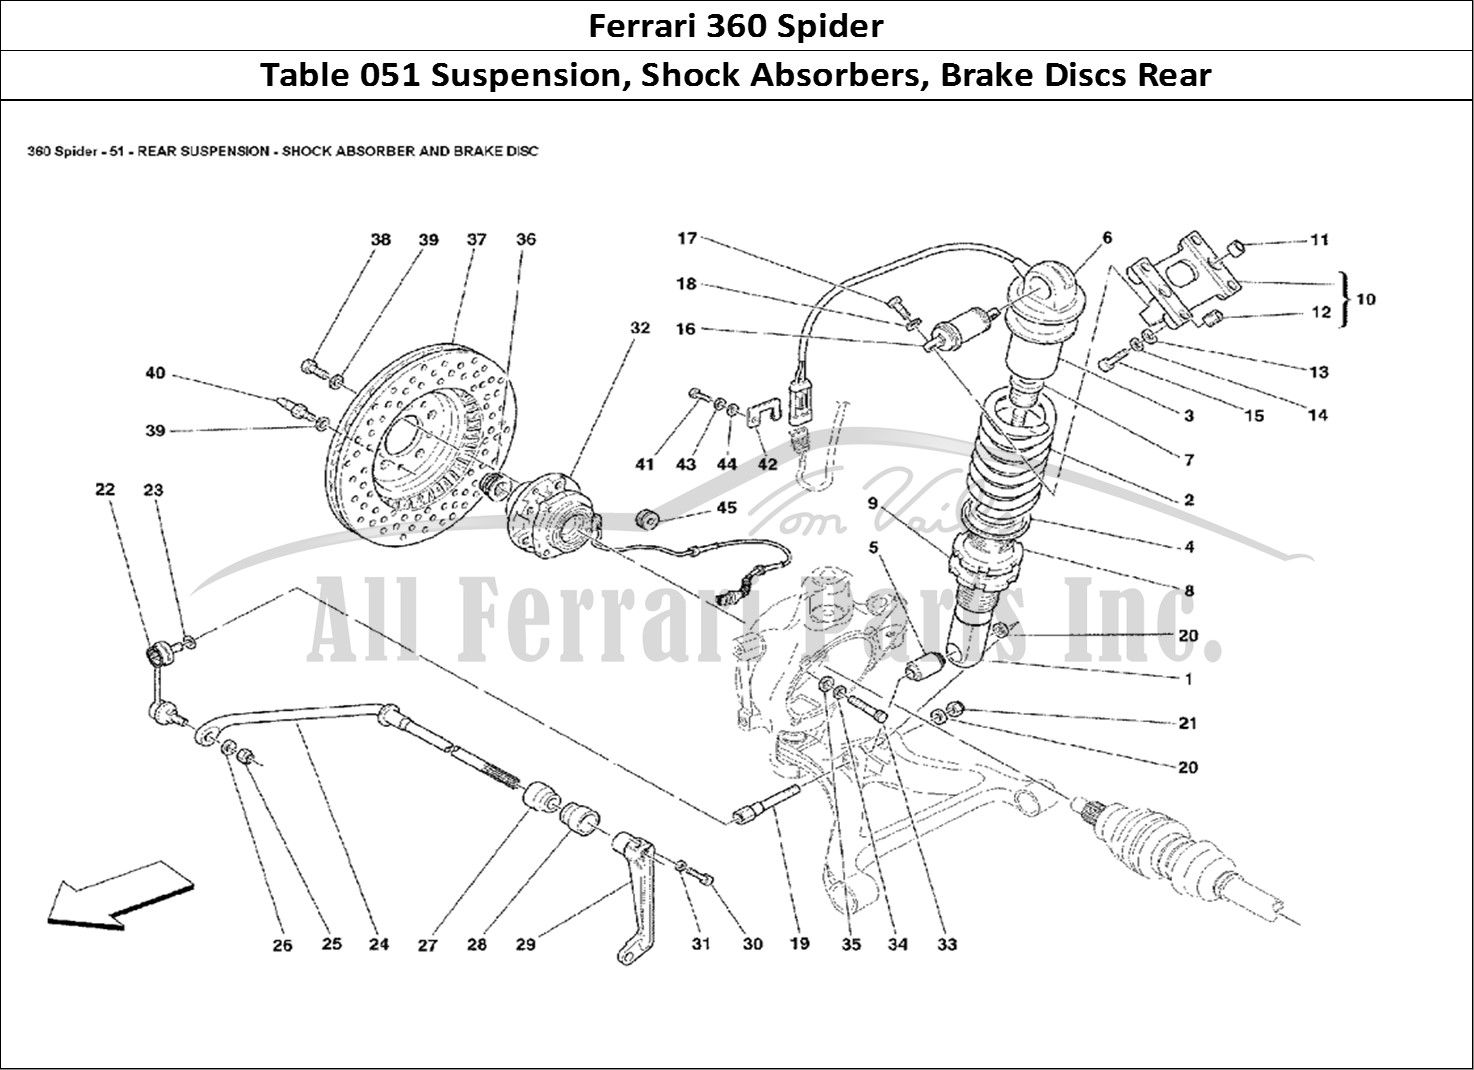 Ferrari Parts Ferrari 360 Spider Page 051 Rear Suspension - Shock A